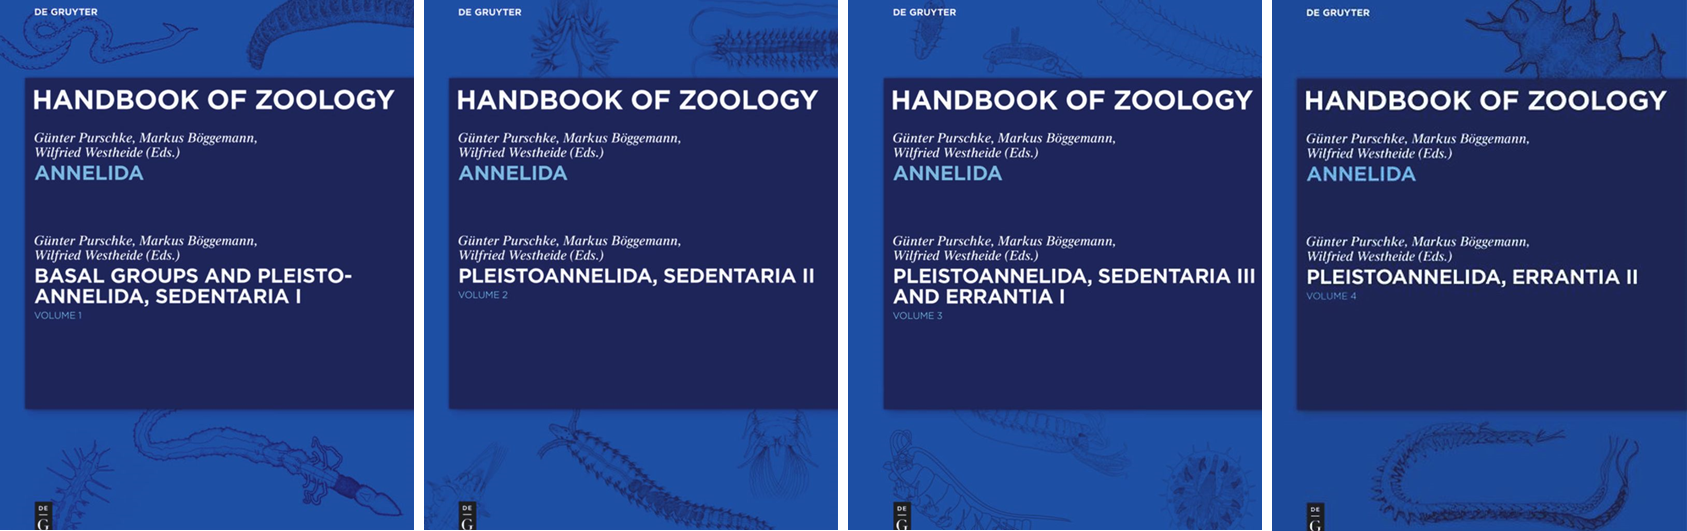 Handbook of Zoology, Annelida, Volume 1-4, Titelseiten